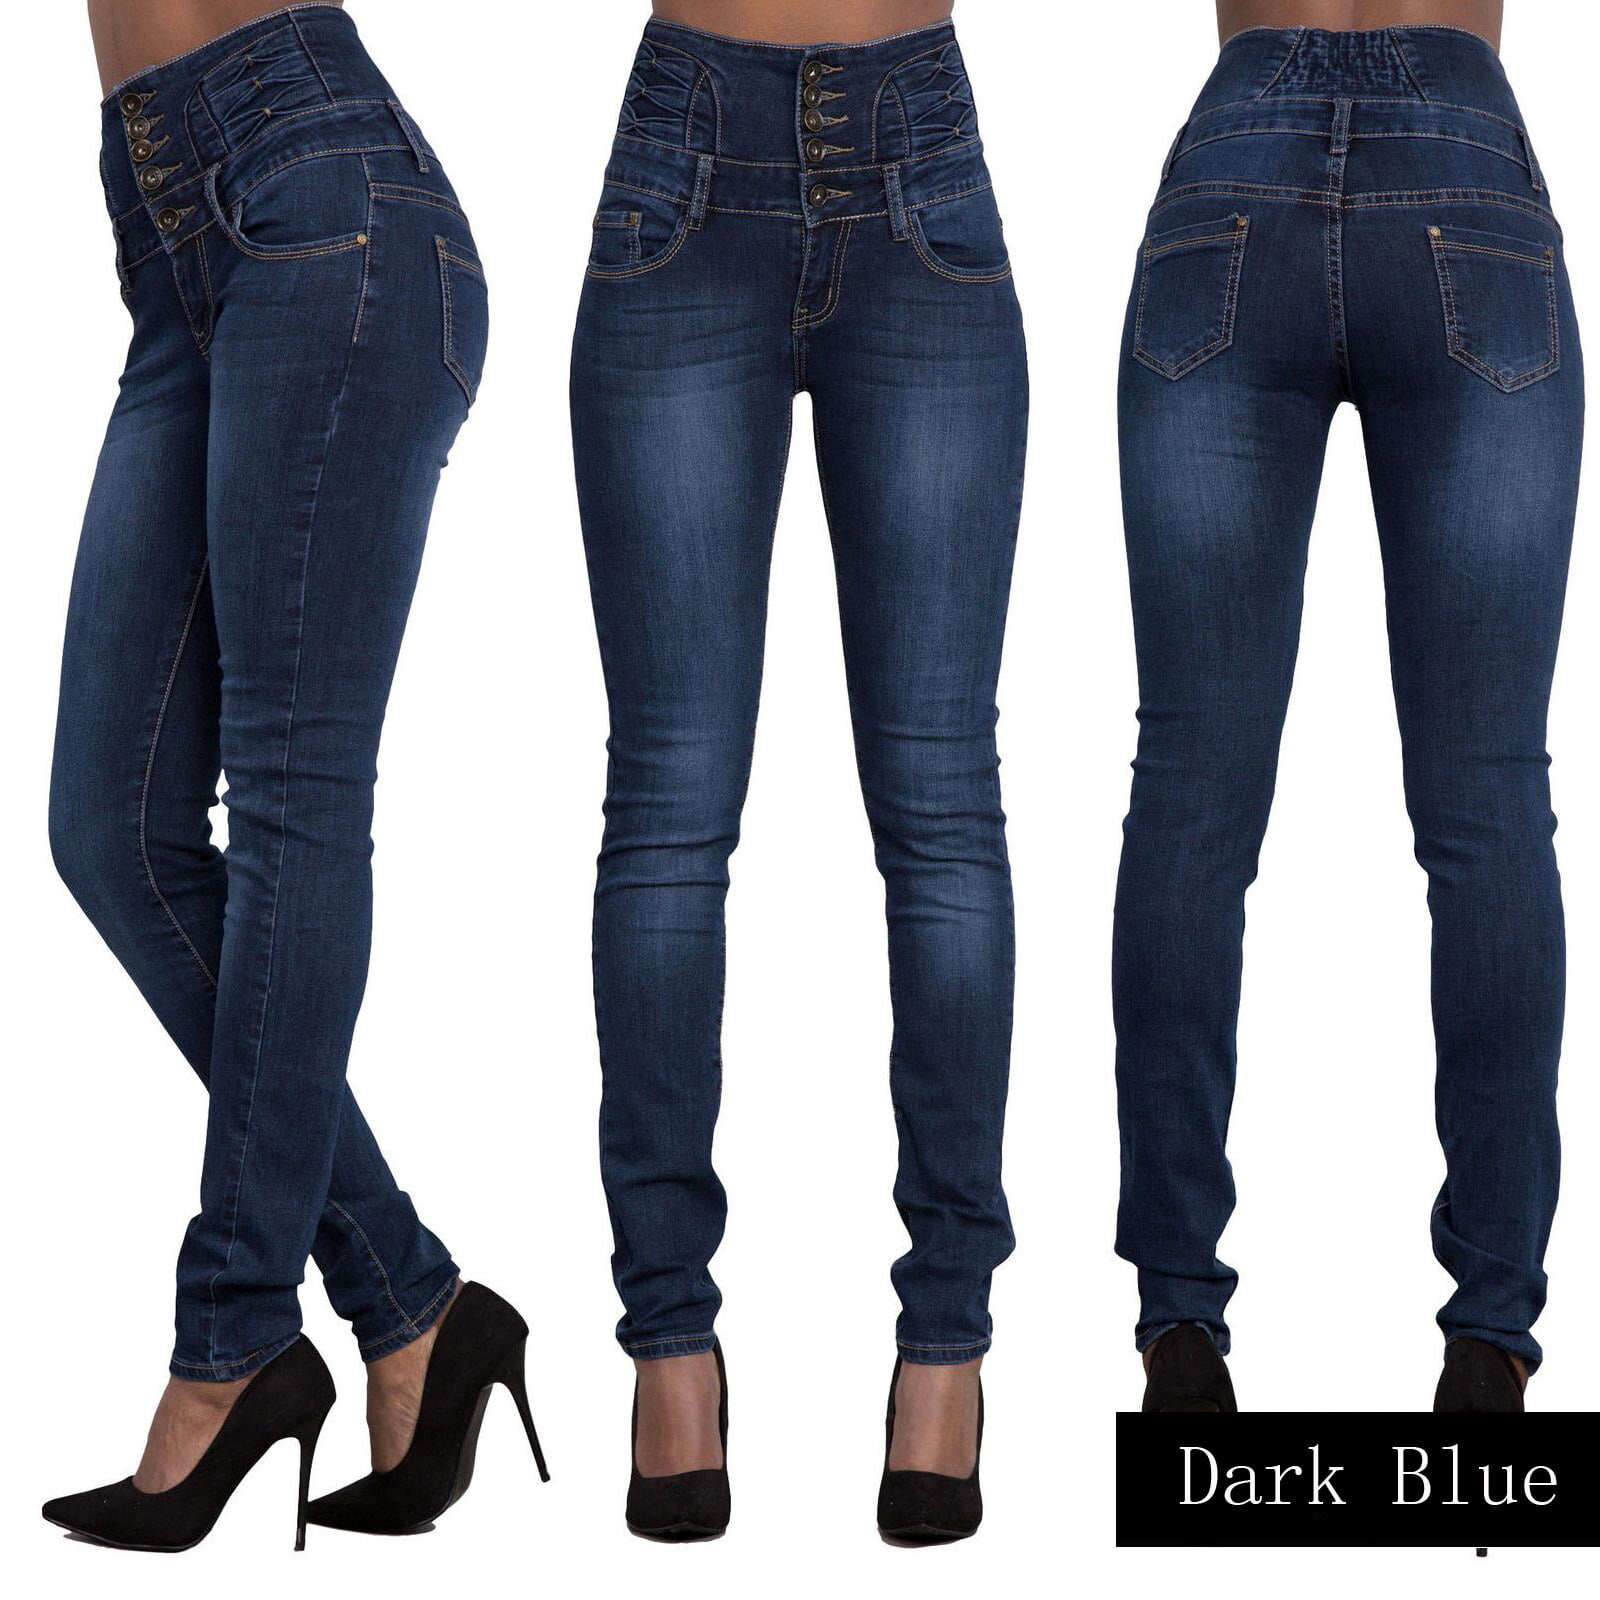 ladies black jeans